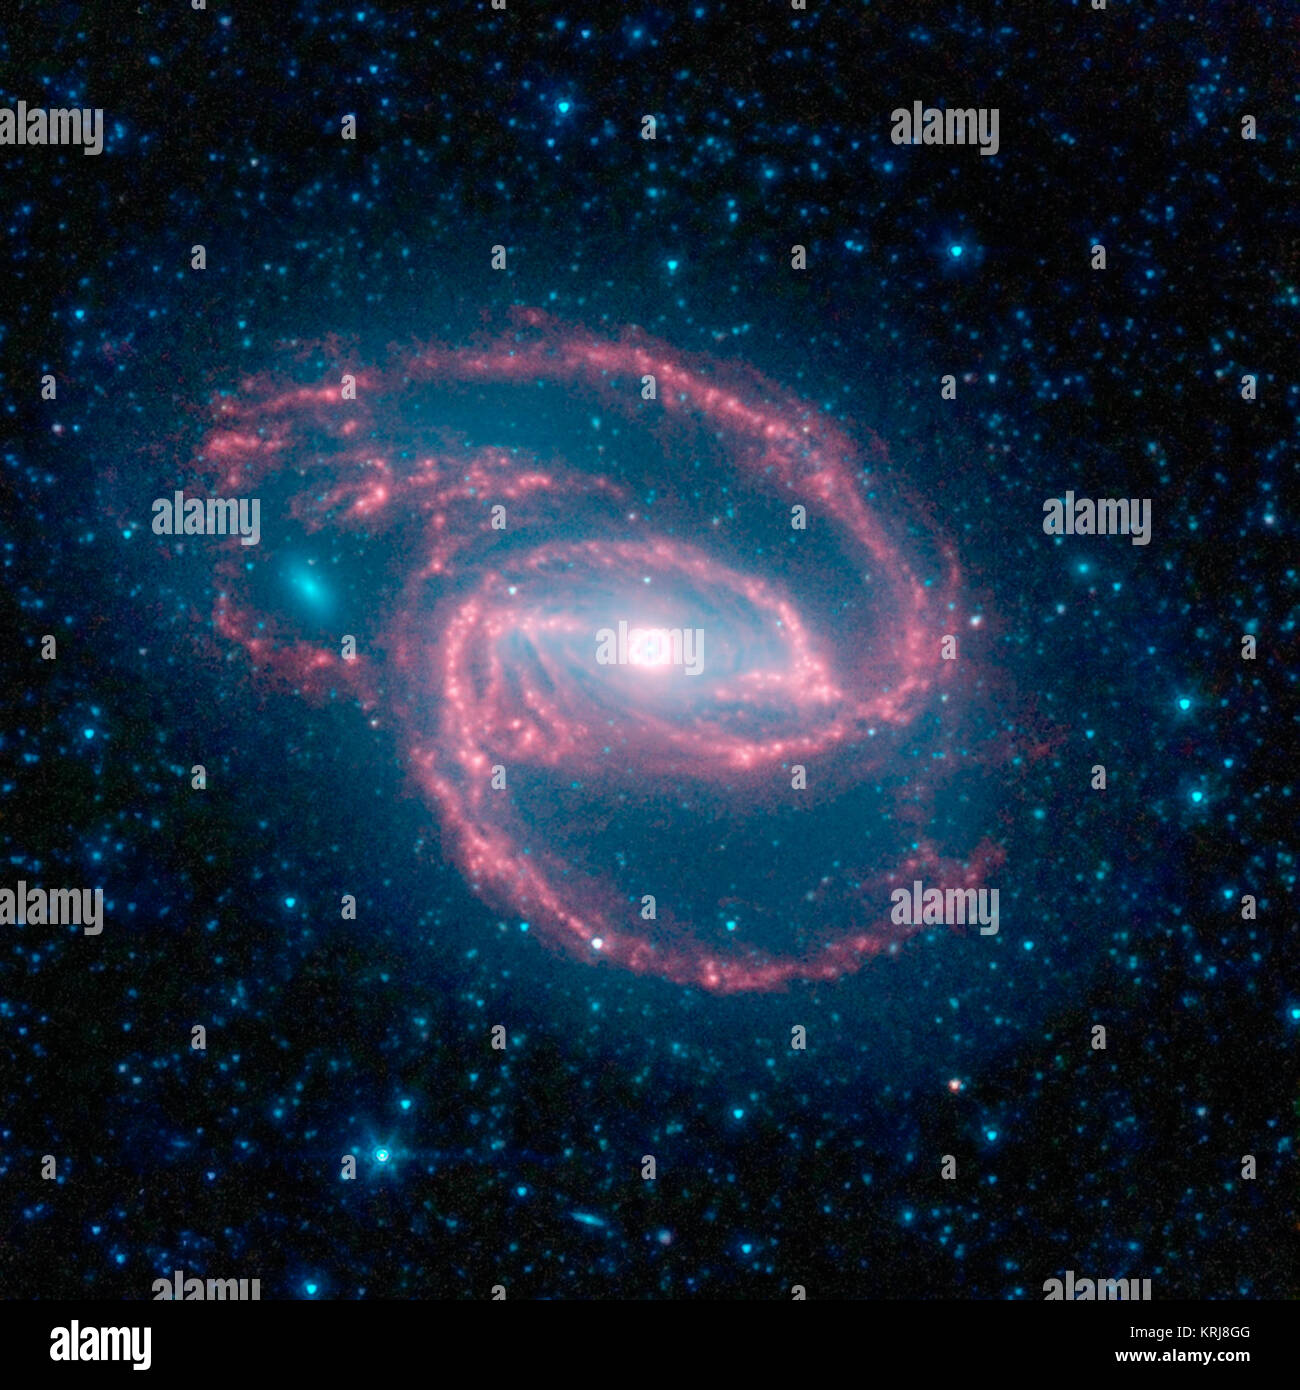 NASA il telescopio spaziale Spitzer ha immaginato una creatura selvatica del buio -- una galassia a spirale con un occhio-simile oggetto al suo centro. La galassia, chiamato NGC 1097, si trova a 50 milioni di anni luce di distanza. Essa è conformata a spirale come la nostra Via Lattea, con lunghi bracci spindly di stelle. Il 'occhio' al centro della galassia è in realtà un mostruoso buco nero circondato da una corona di stelle. In questo codificati a colori vista a raggi infrarossi da Spitzer, la zona attorno al invisibile buco nero è blu e la corona di stelle, bianco. Il buco nero è enorme, circa 100 milioni di volte la massa del nostro sole e sta alimentando il gas e Foto Stock